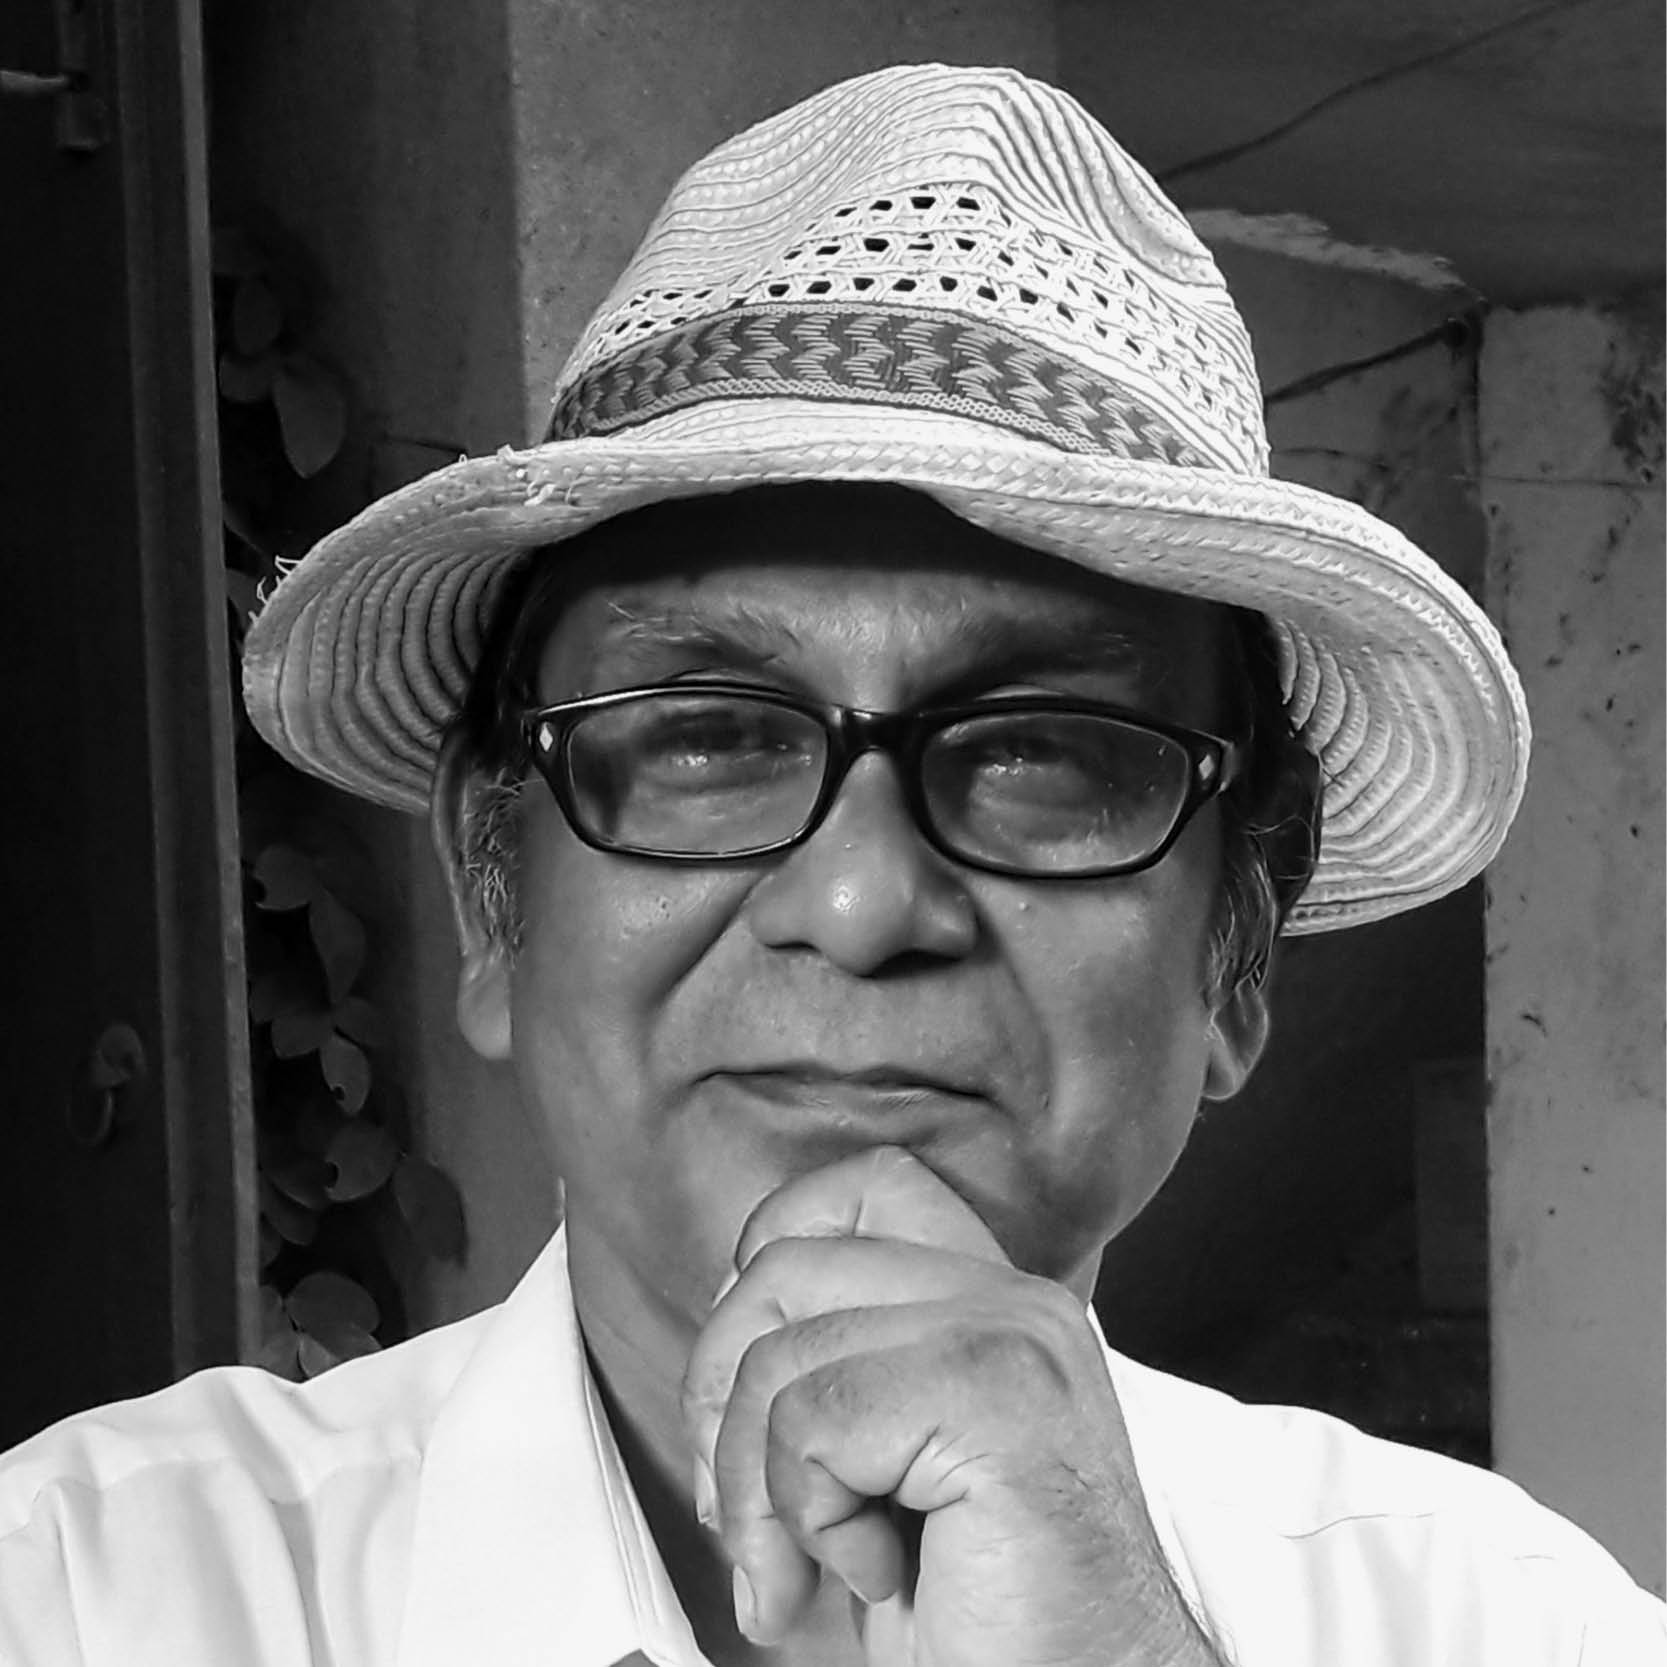 Author Subhashis Das